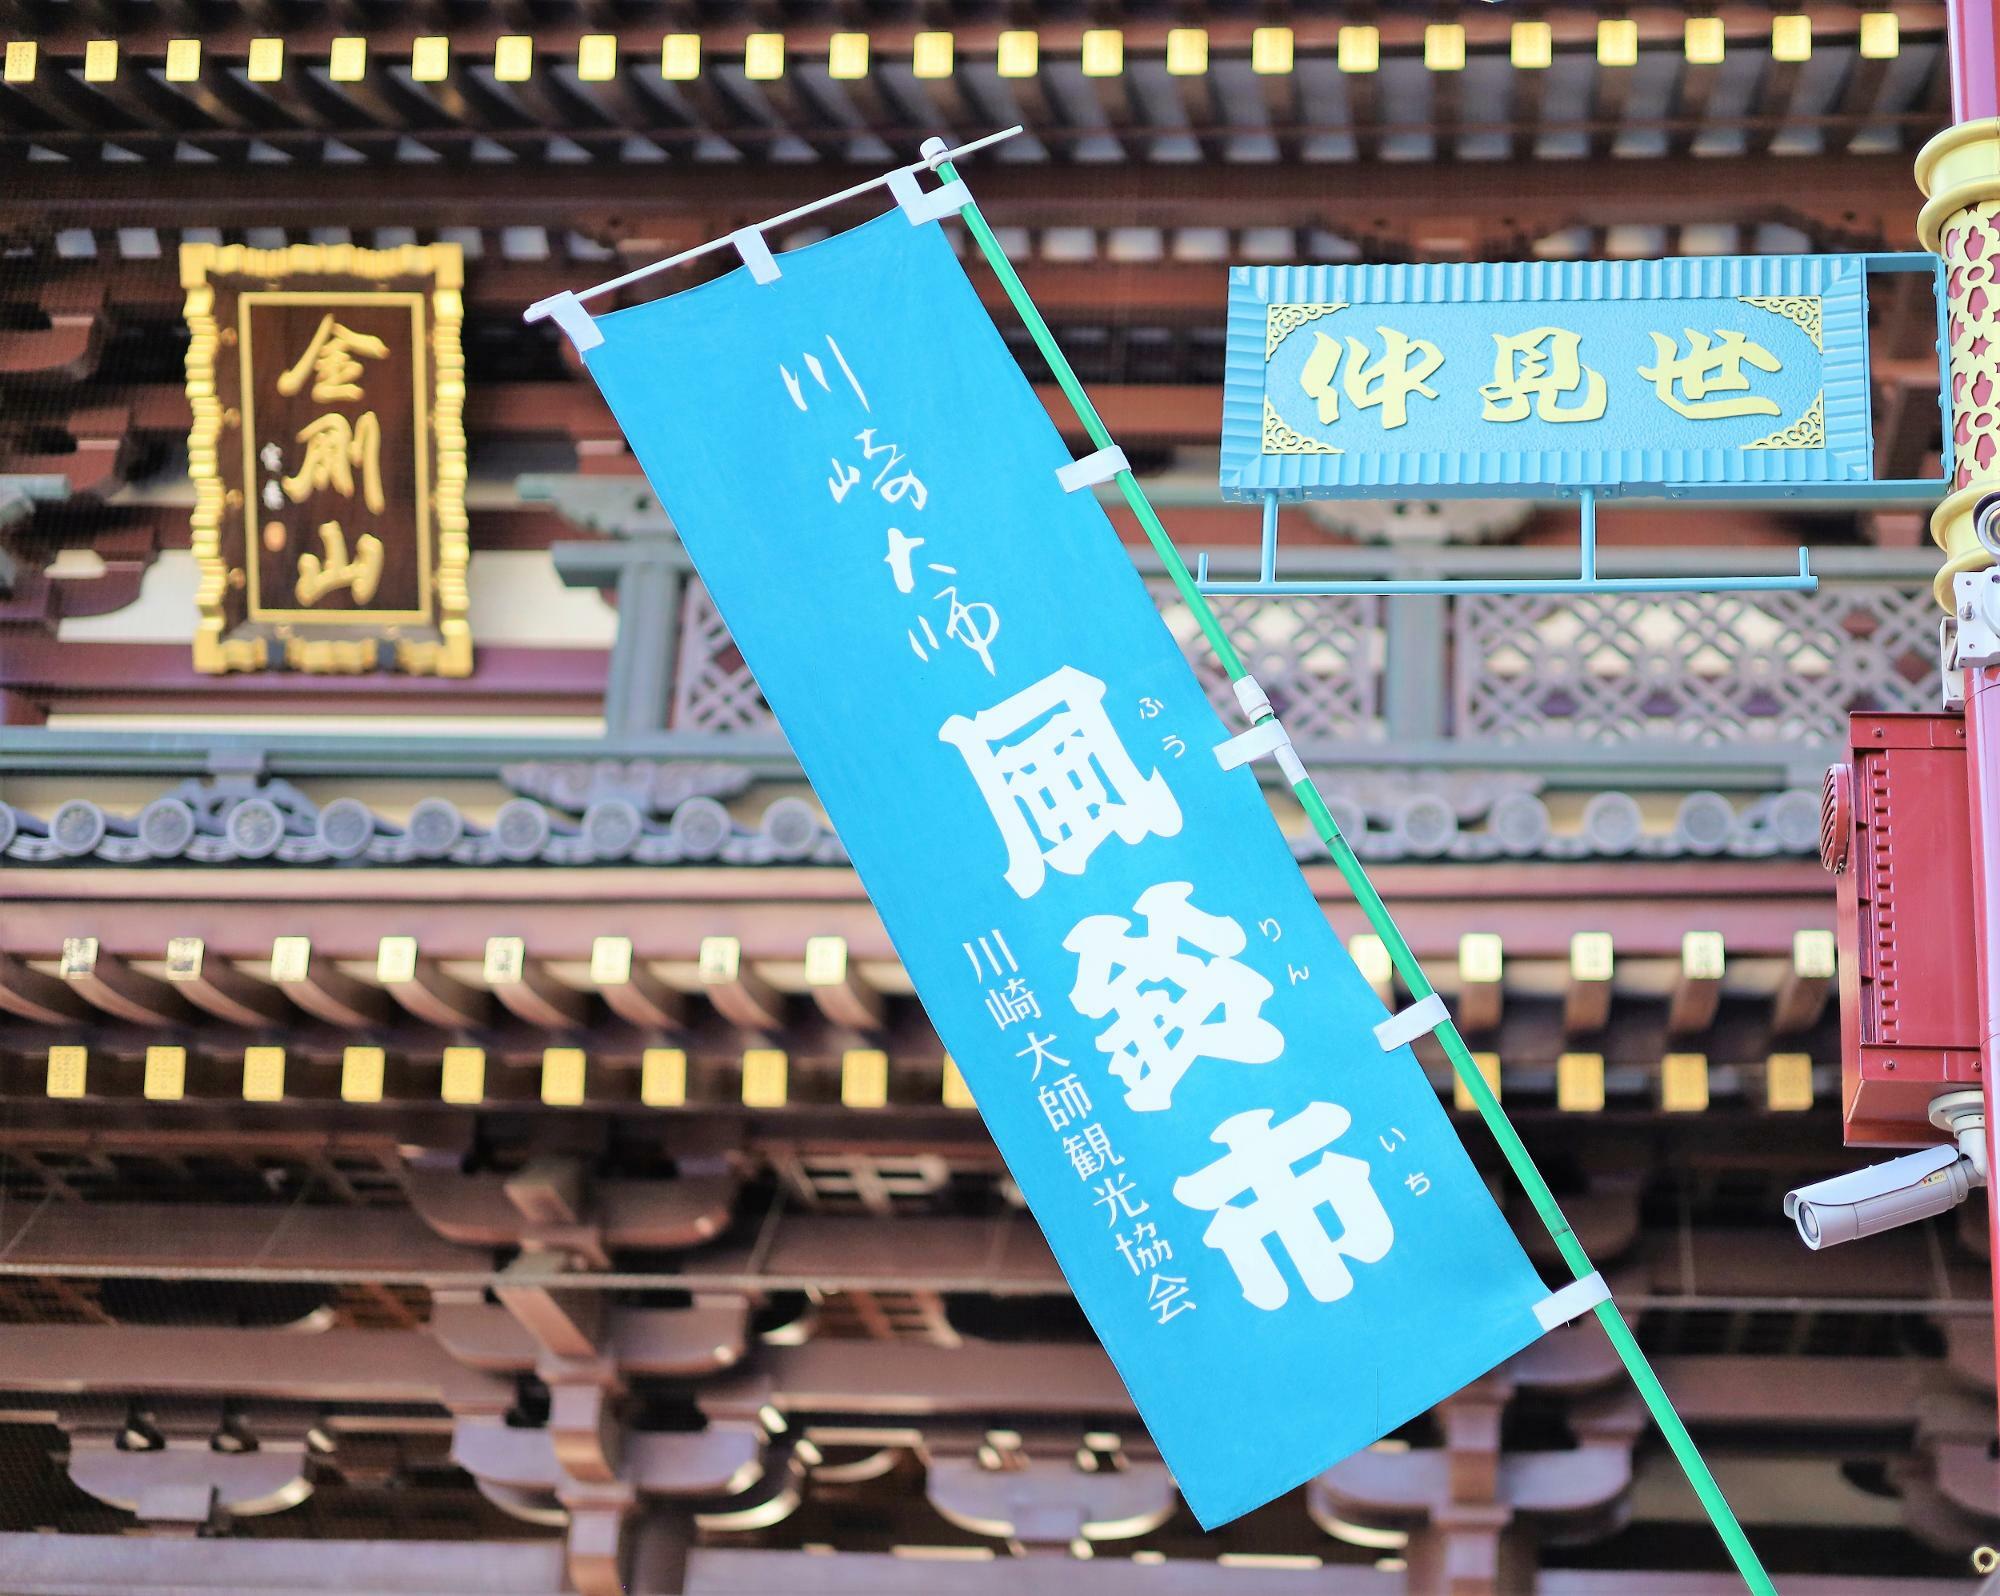 川崎大師の風鈴市は8月22日まで開催。